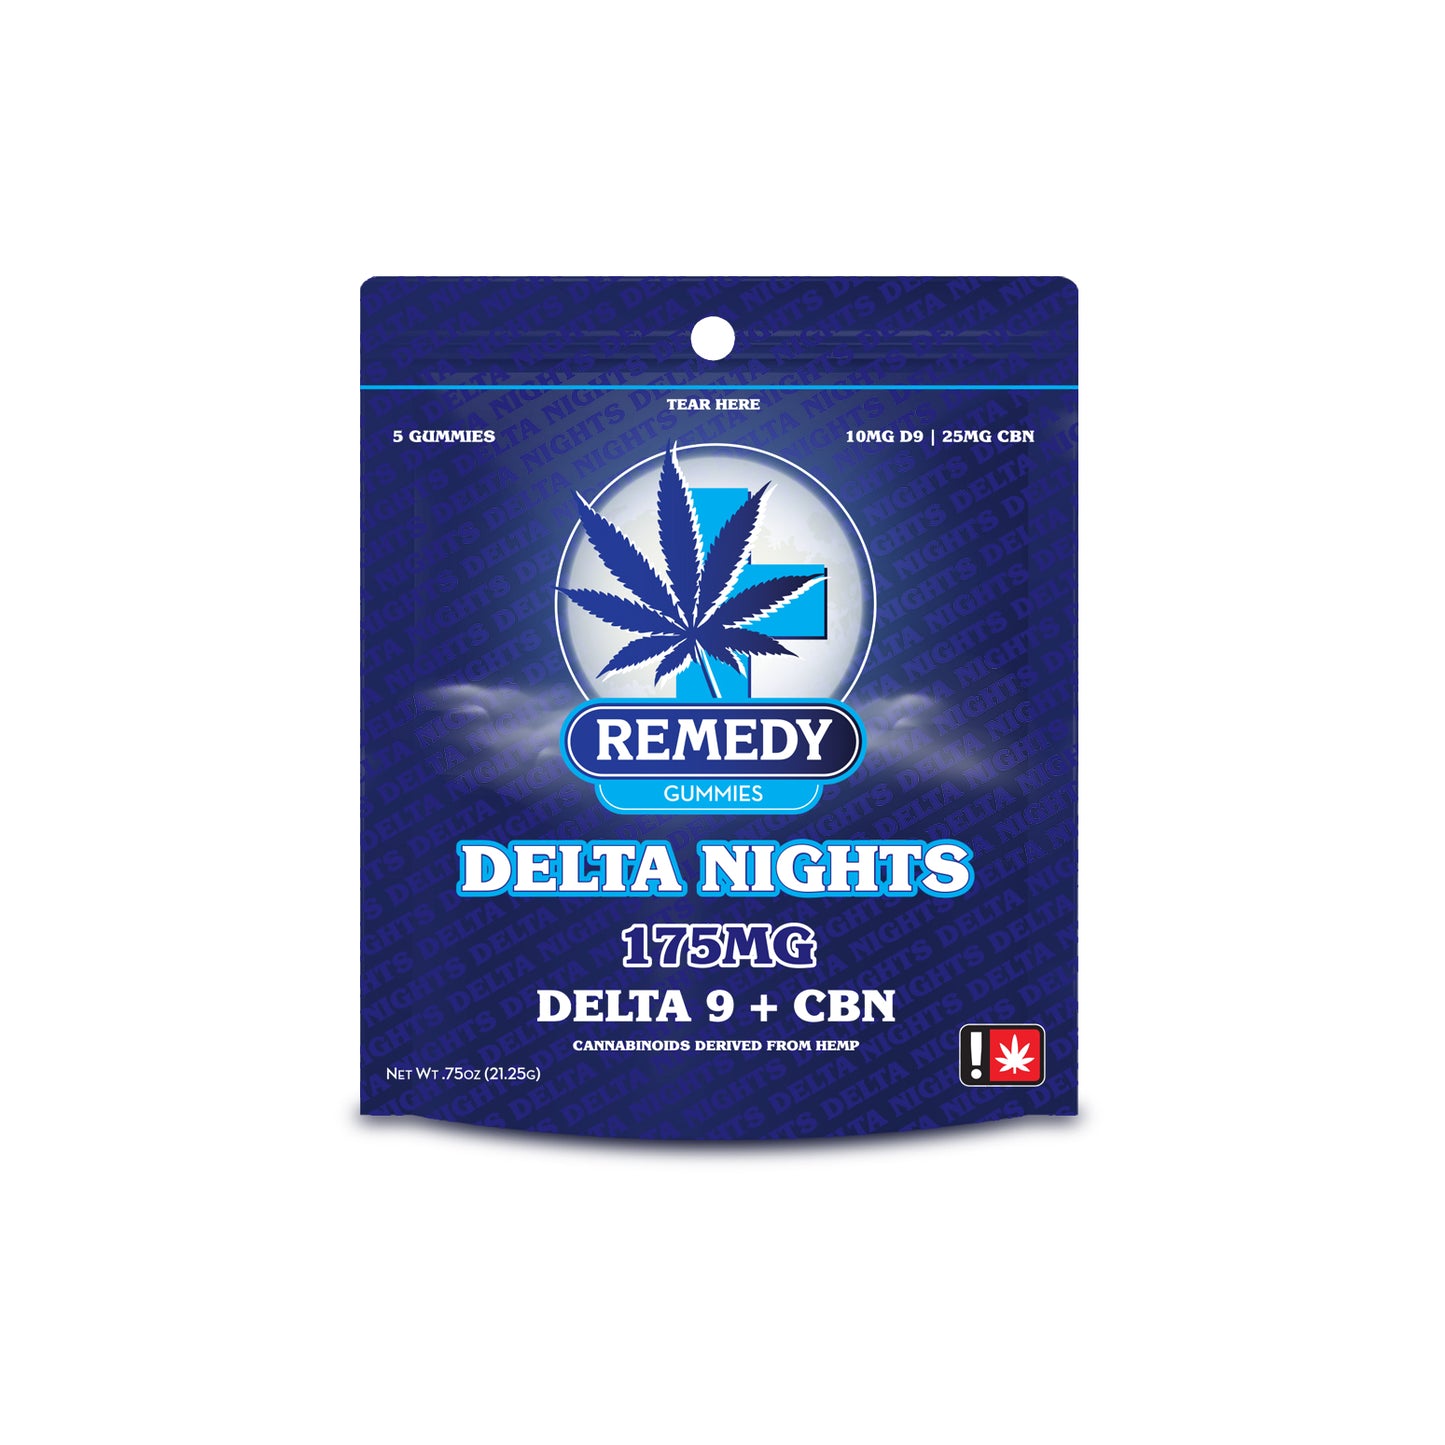 Delta Days & Nights Gummy Bundle Buy 1 Get 1 FREE